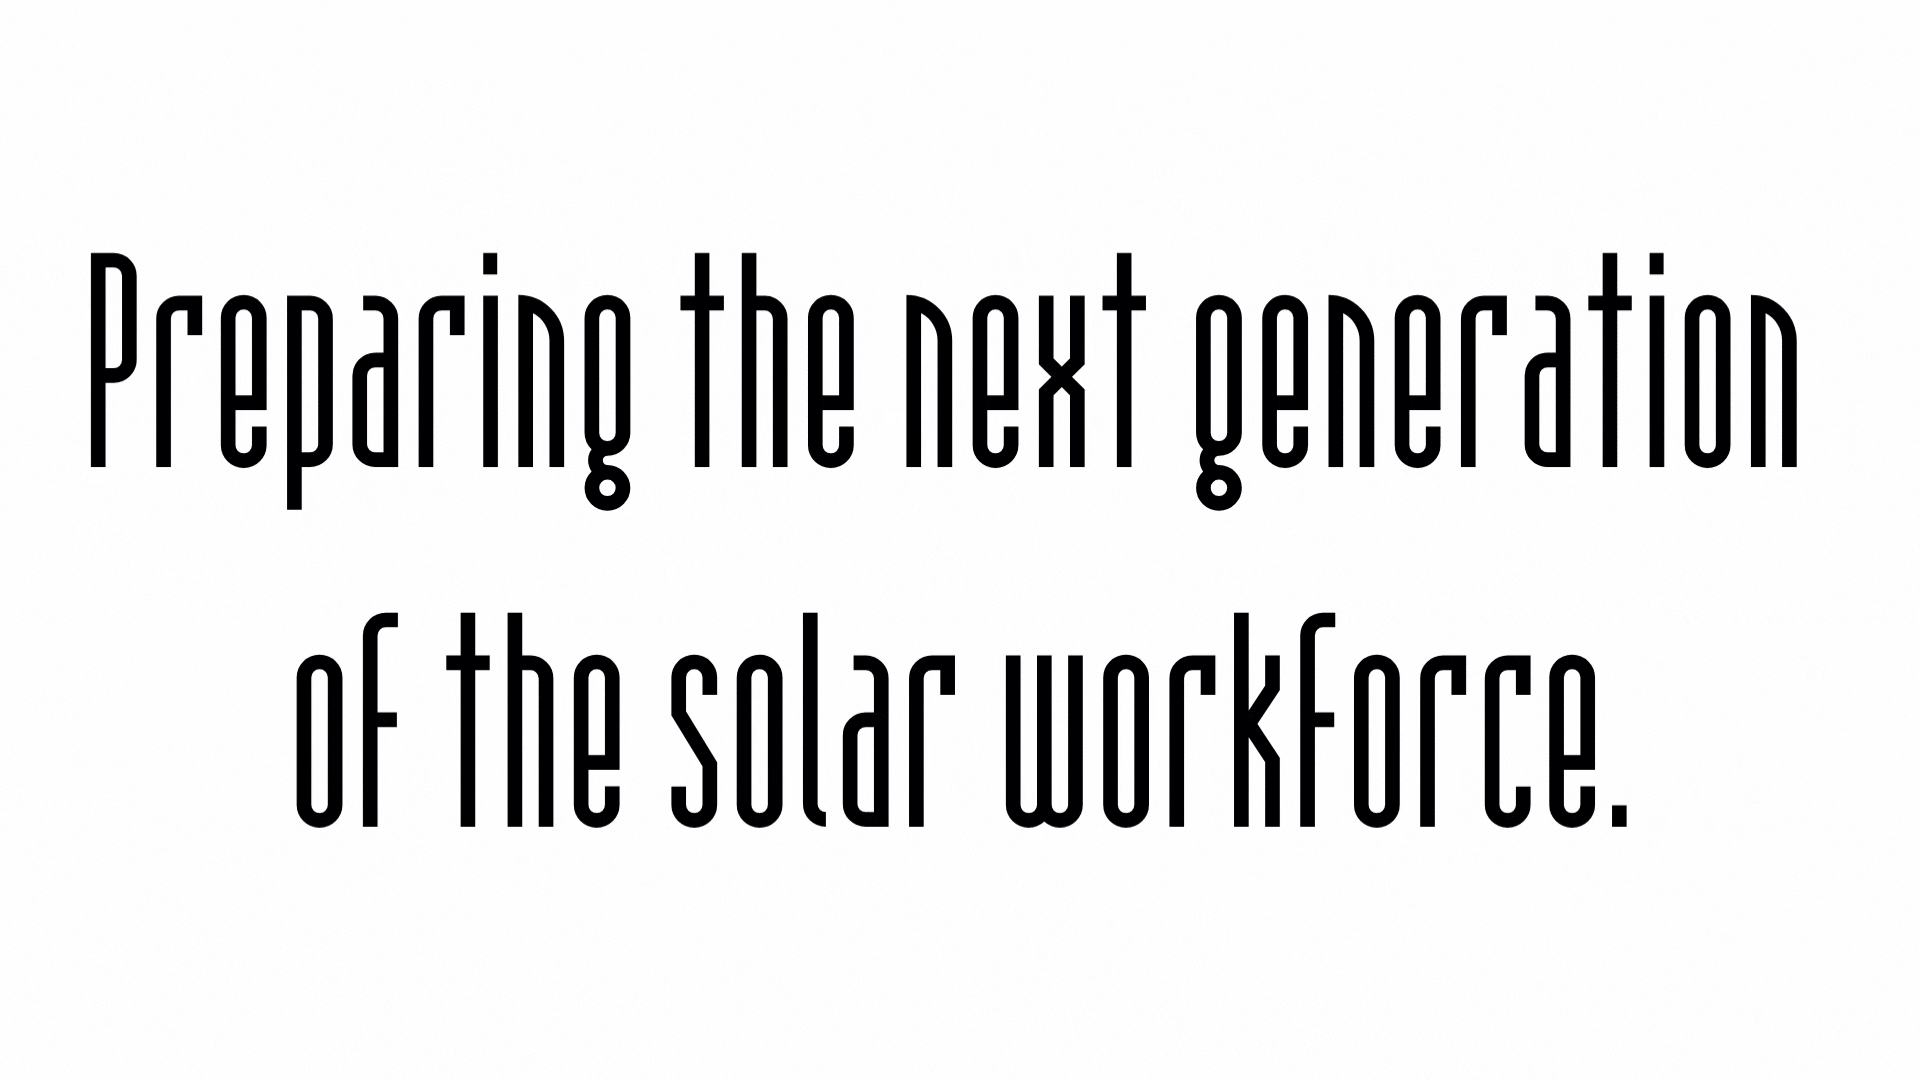 NextGen Training Academy: Preparing the next generation of teh solar workforce.